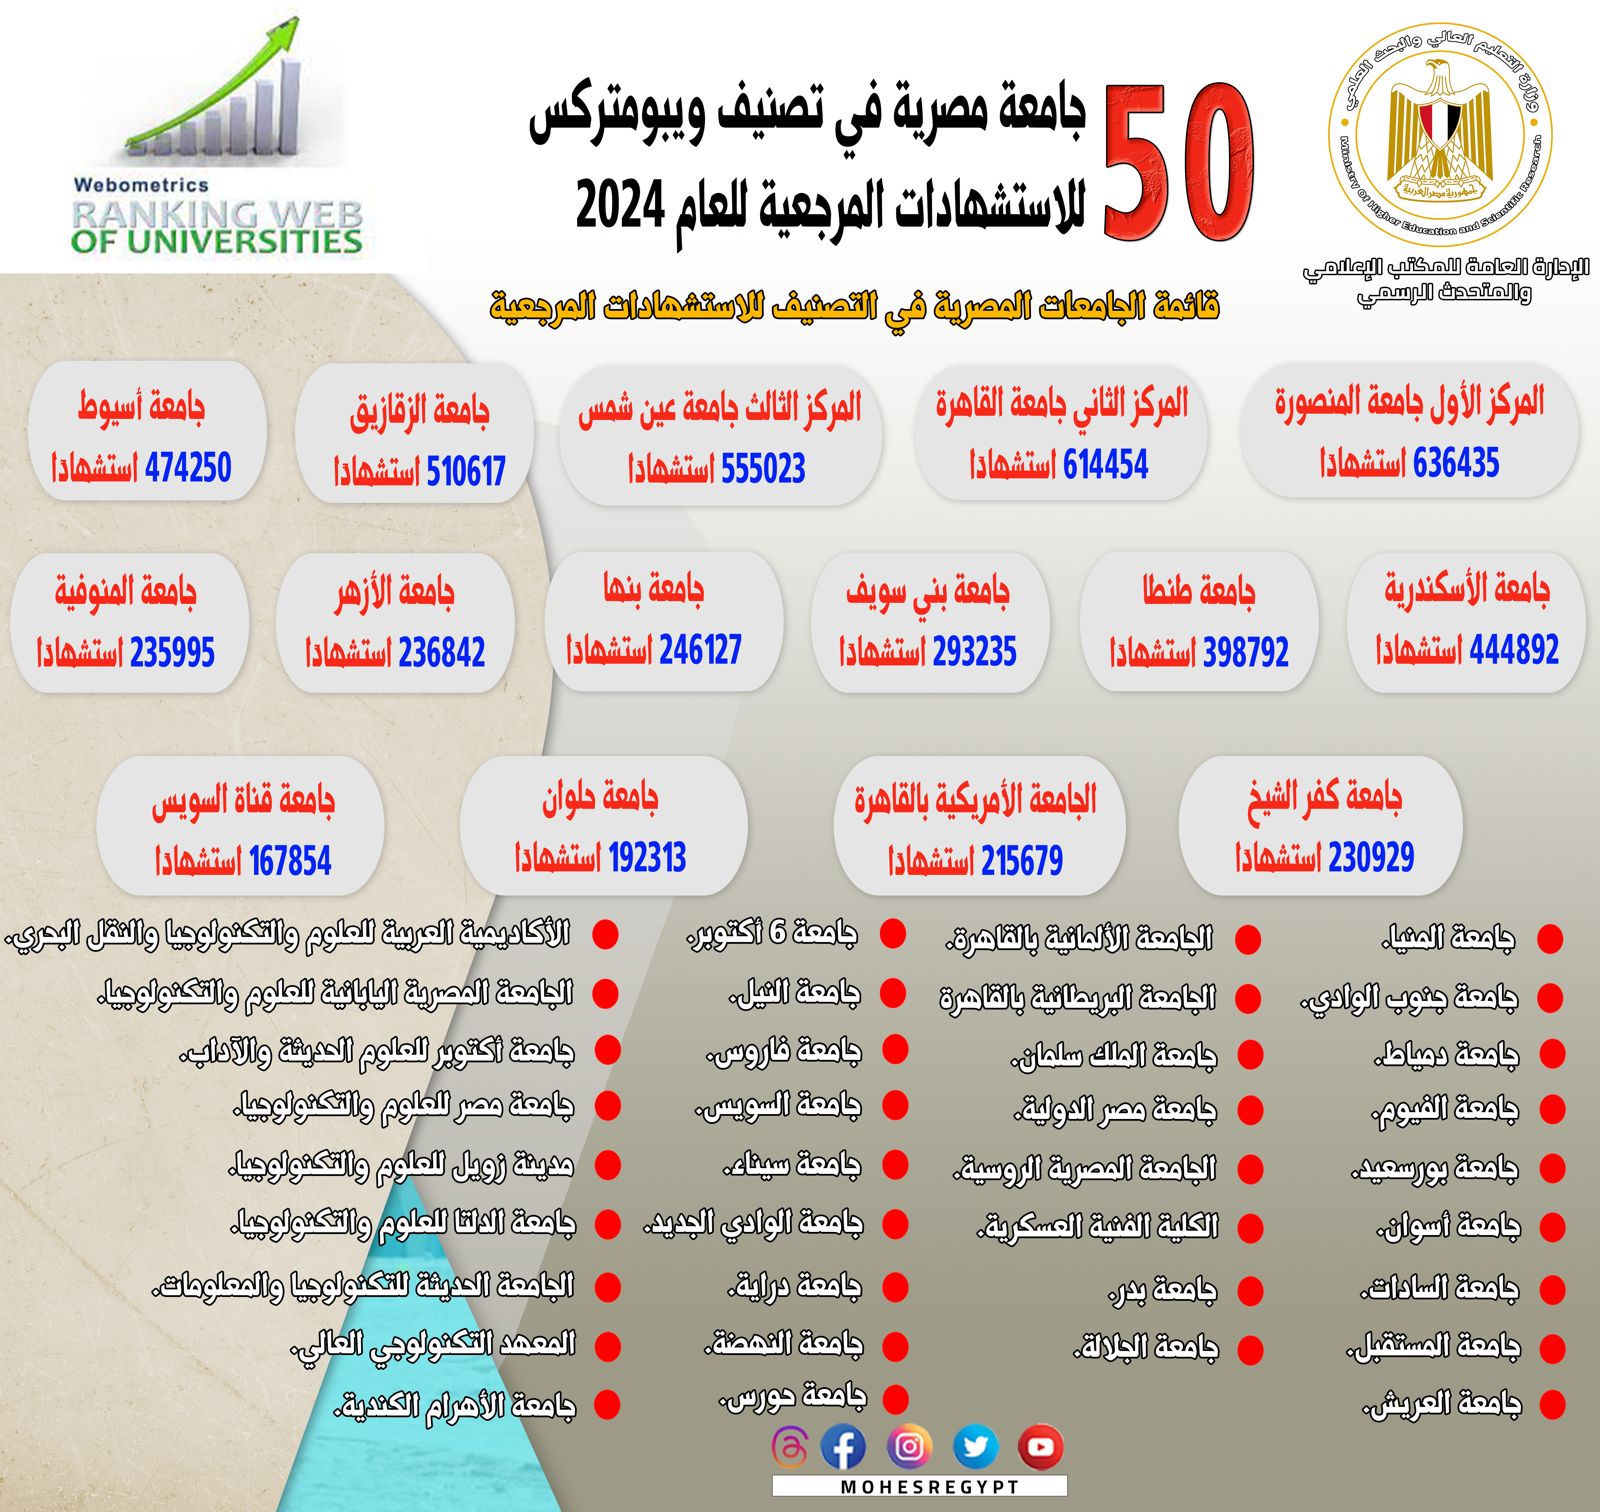 إدراج 50 جامعة مصرية في تصنيف ويبومتركس